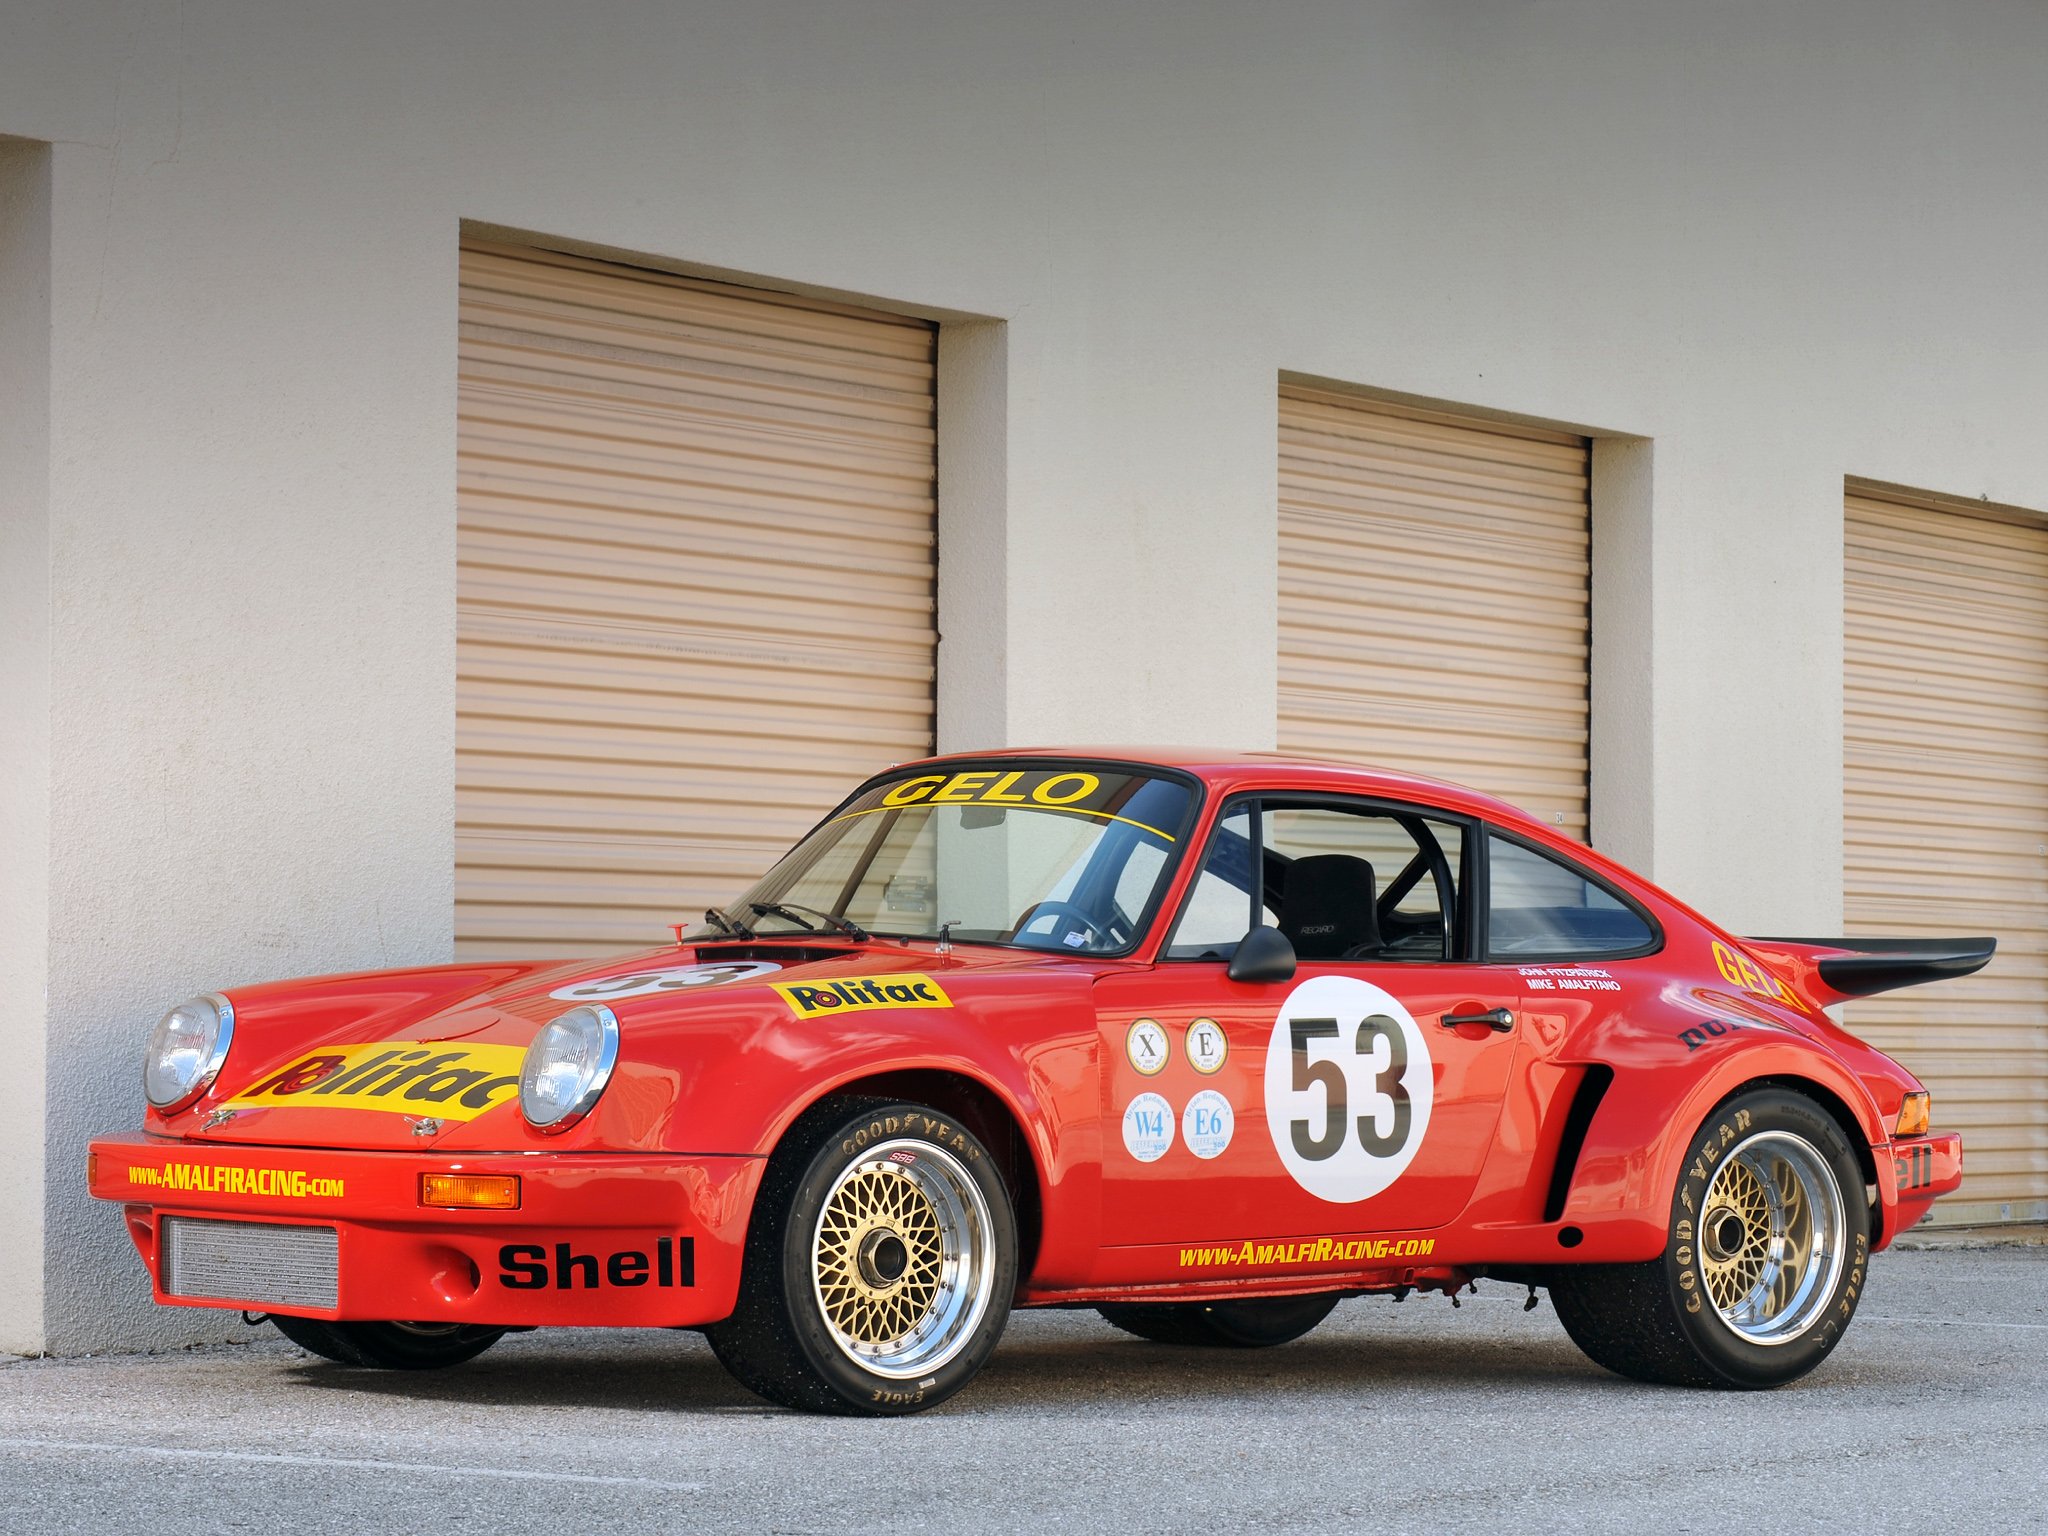 1974 77, Porsche, 911, Carrera, Rsr, 3 0, Coupe, Race, Racing, Supercar Wallpaper